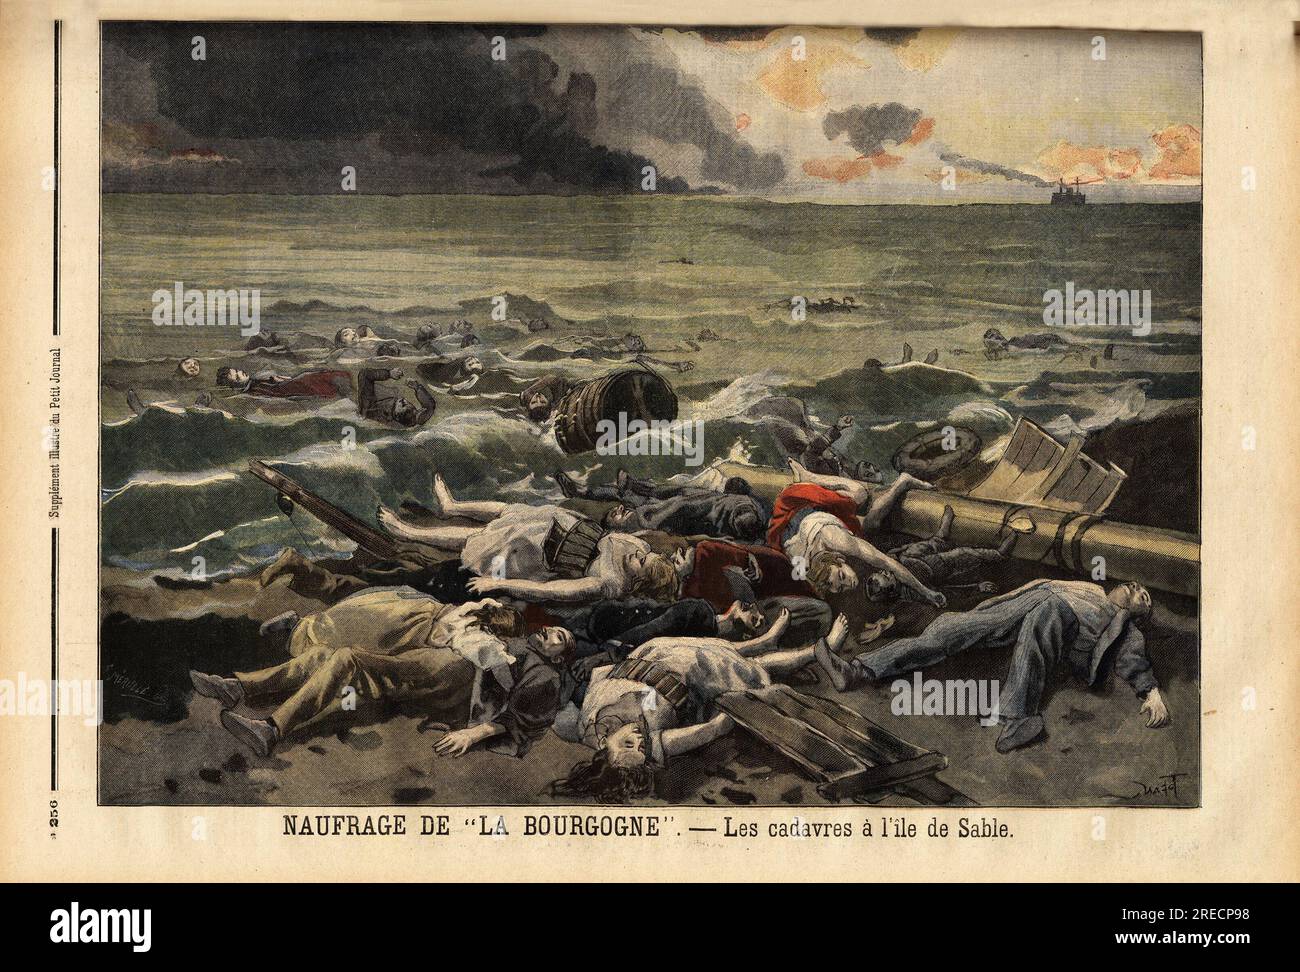 Amoncellement des cadavres des naufrages du navire La bourgogne, sur l'ile de Sable, au nord ouest d'Halifax. Gravure in "Le Petit Journal" 781898. . Stockfoto